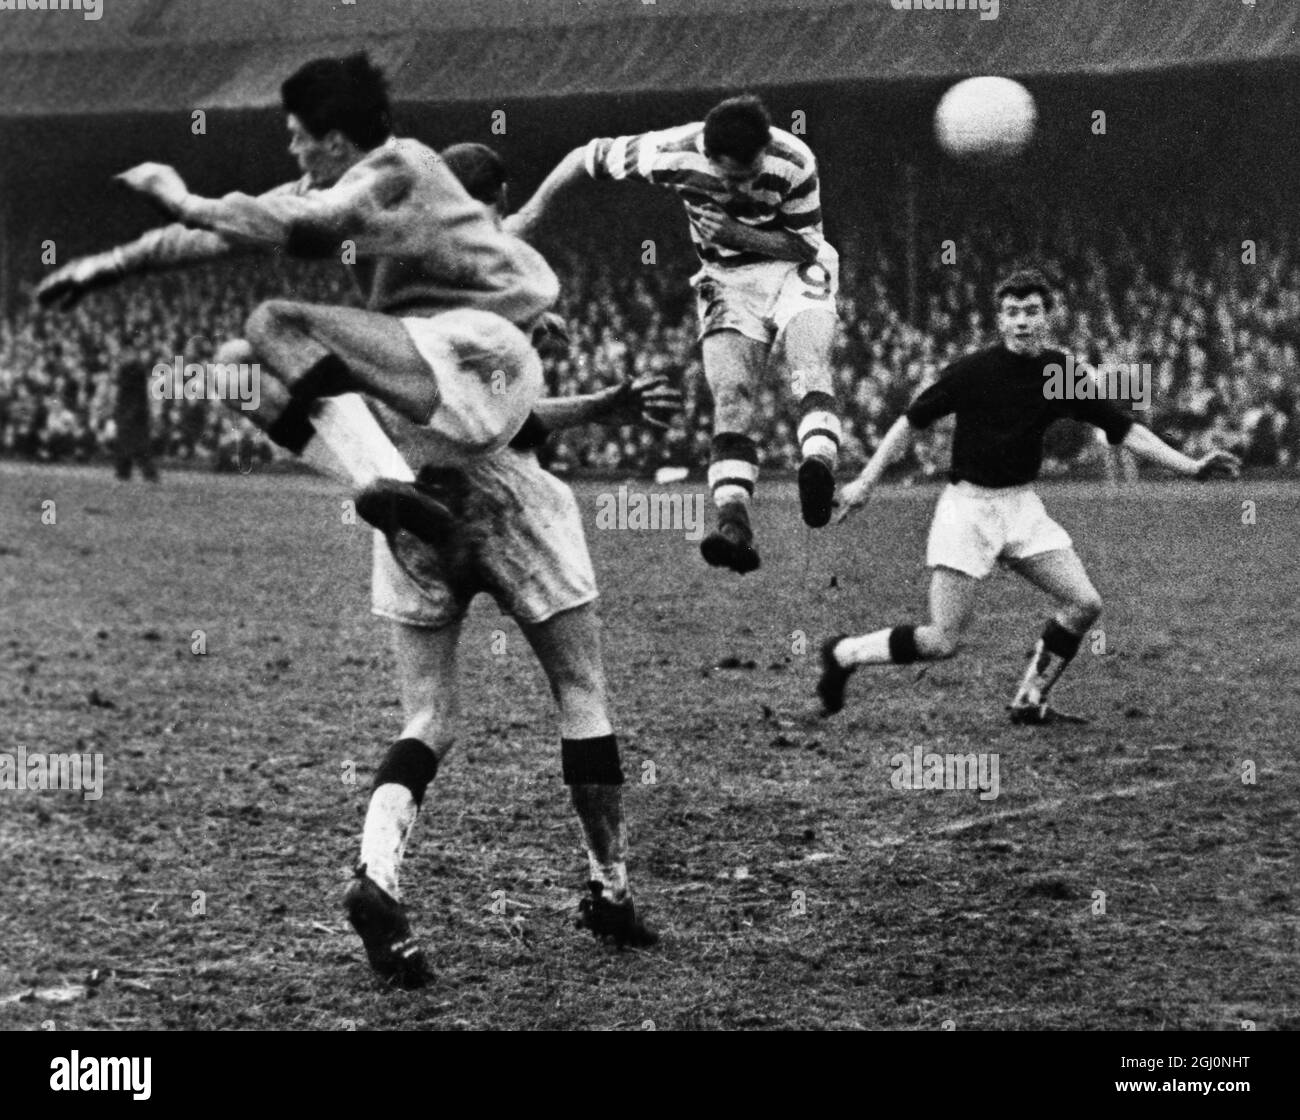 Glasgow ; Chalmers , ( No 9 ) Köpfe in seinem zweiten Tor für Celtic während der Scottish League Division ein Spiel gegen Falkirk . Das Spiel führte zu einem 7:0-Sieg für Celtic . 6. Januar 1964 Stockfoto